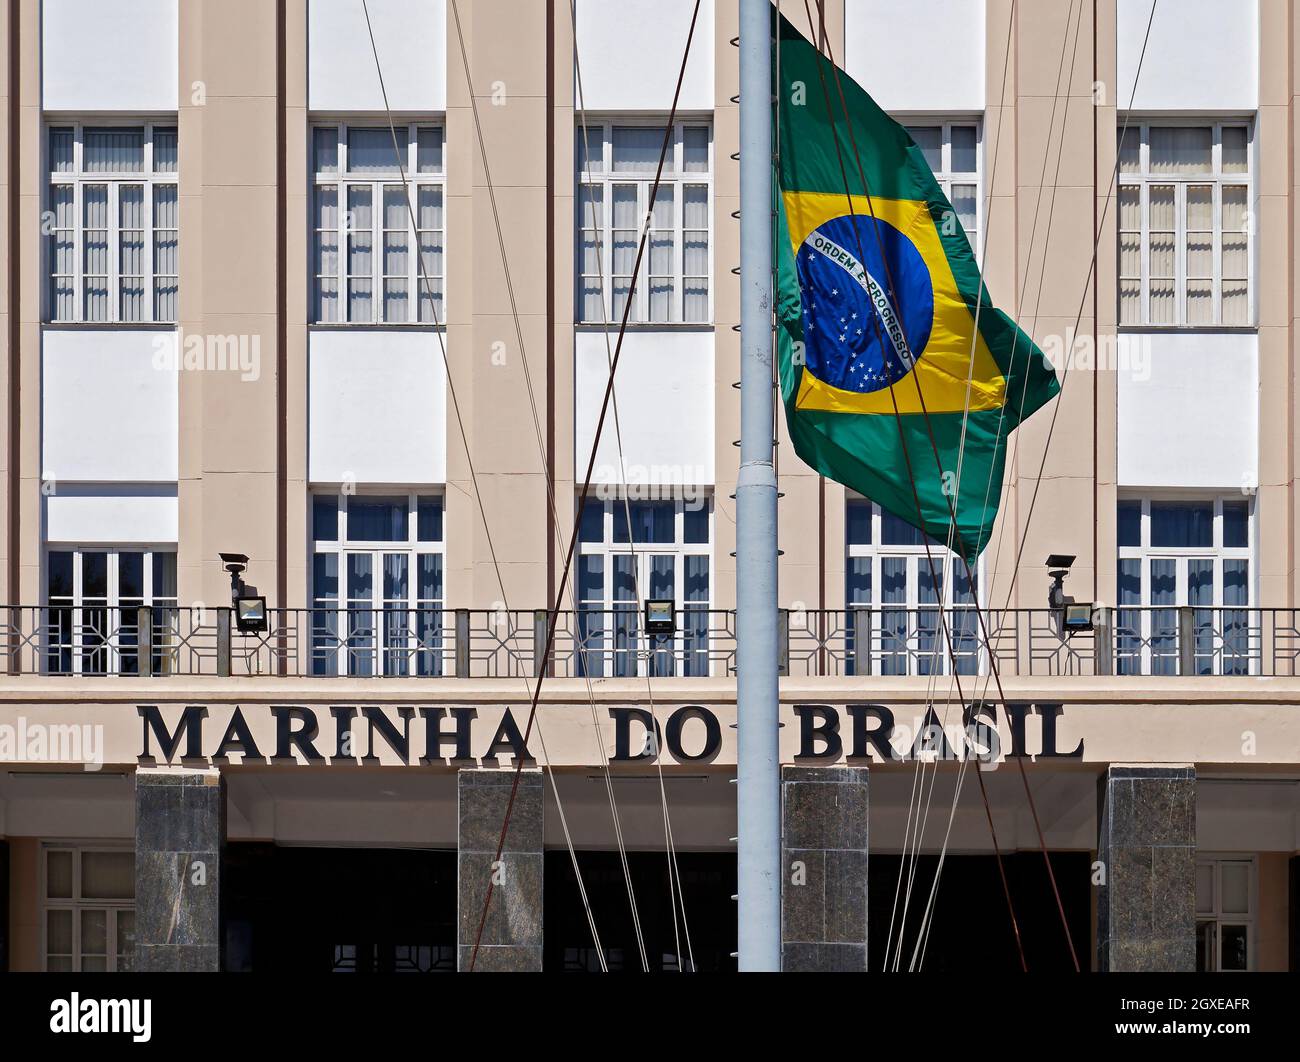 RIO DE JANEIRO, BRAZIL - DECEMBER 30, 2019: Brazilian Navy Teaching Directorate facade and Brazilian flag Stock Photo